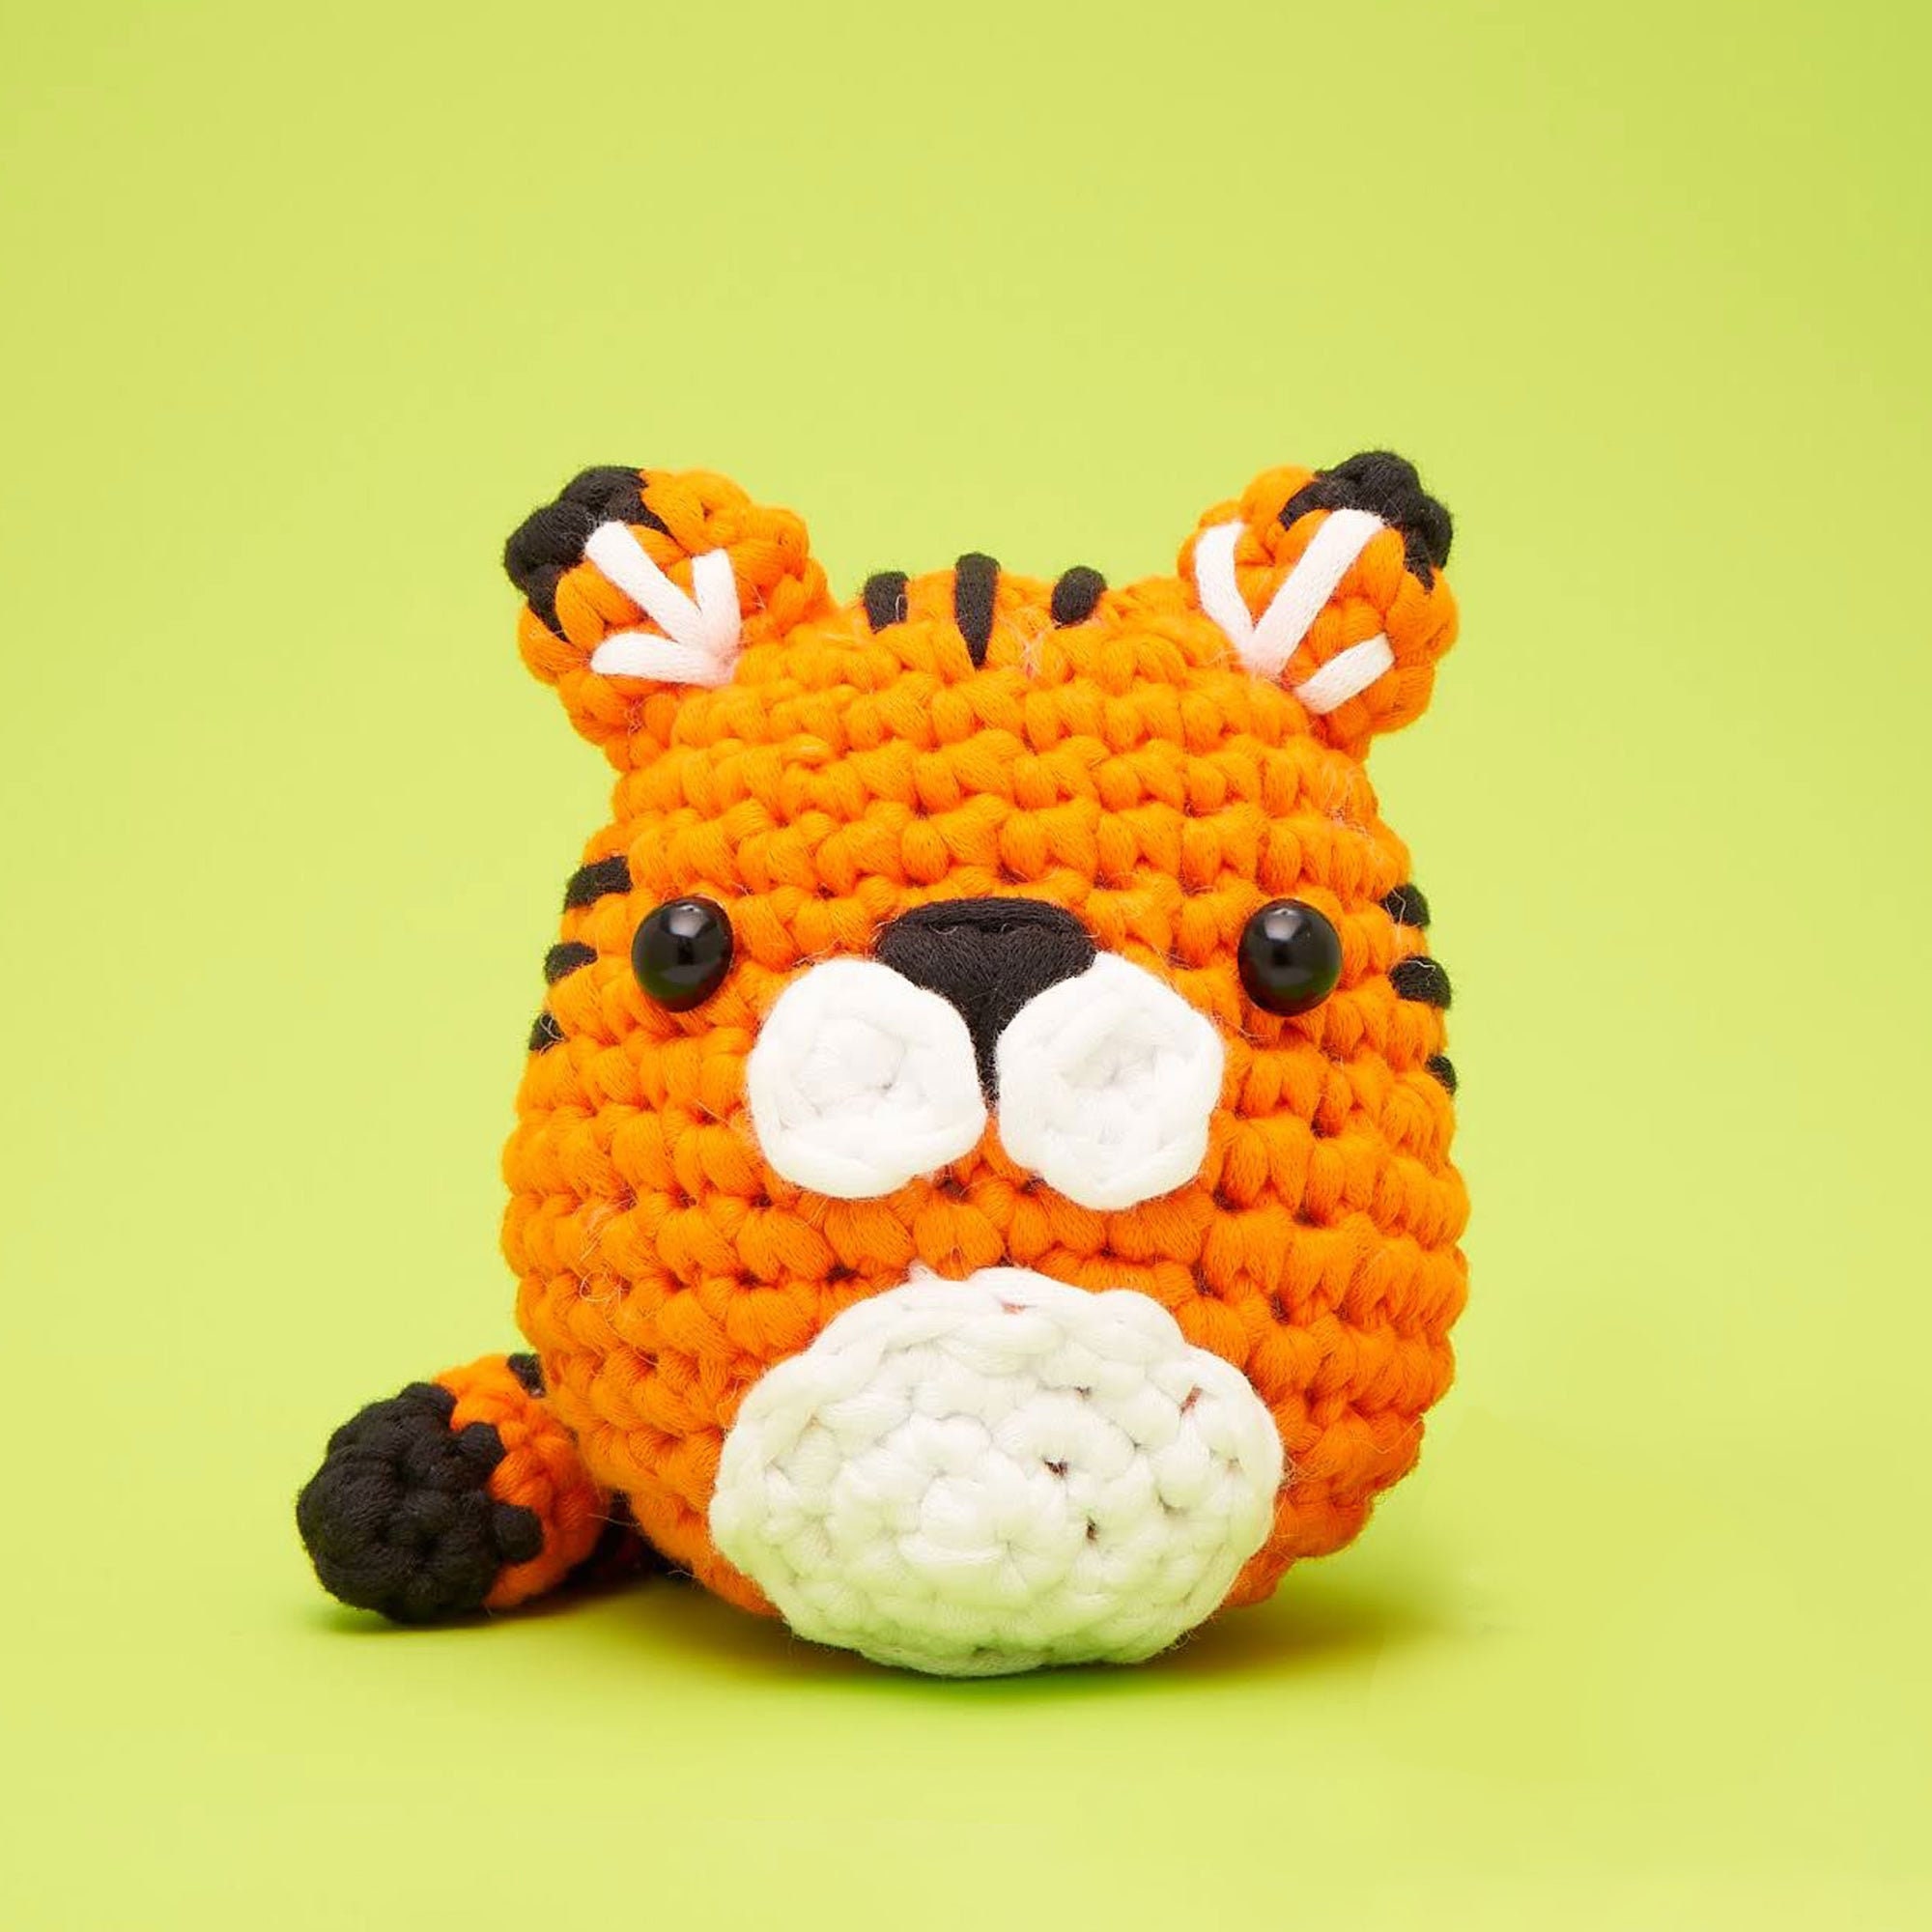  Wobbles Crochet Animal Kit 3 Pack Elk/Tiger/Frog Crochet  Starter Kit with Step-by-Step Video Crochet for Kids Adults Beginner